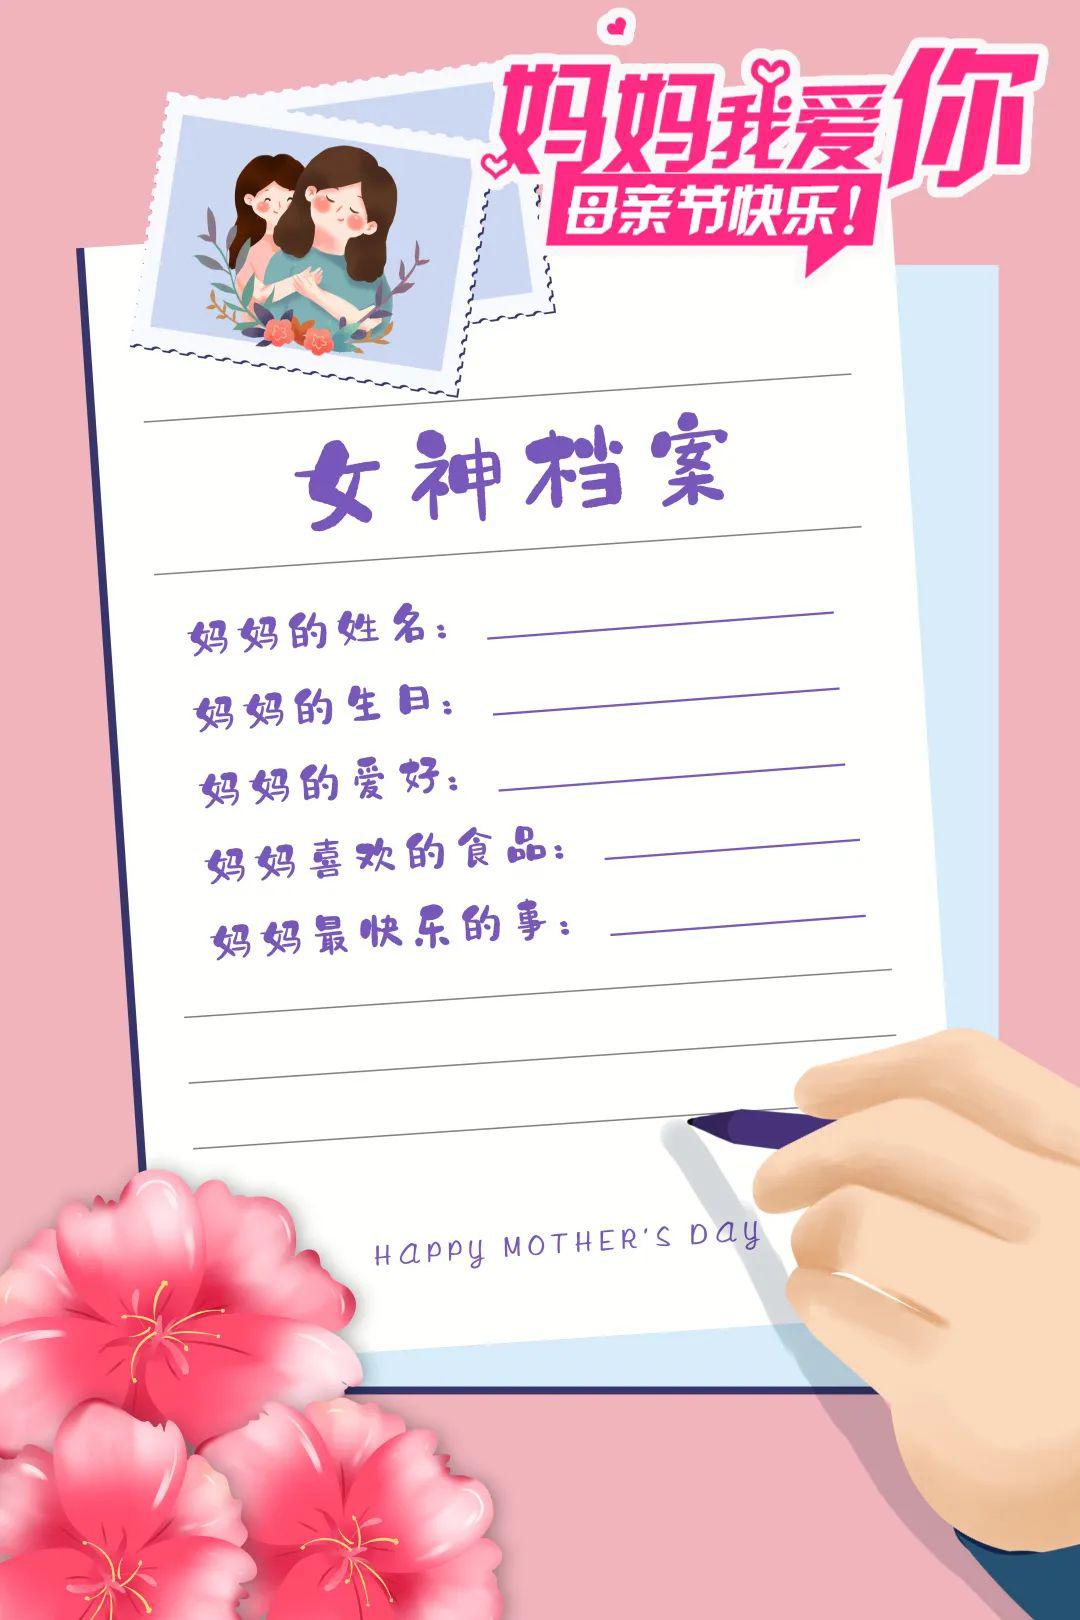 用一张精致的卡片自制感恩母亲亲情档案,记录下妈妈的姓名,妈妈的